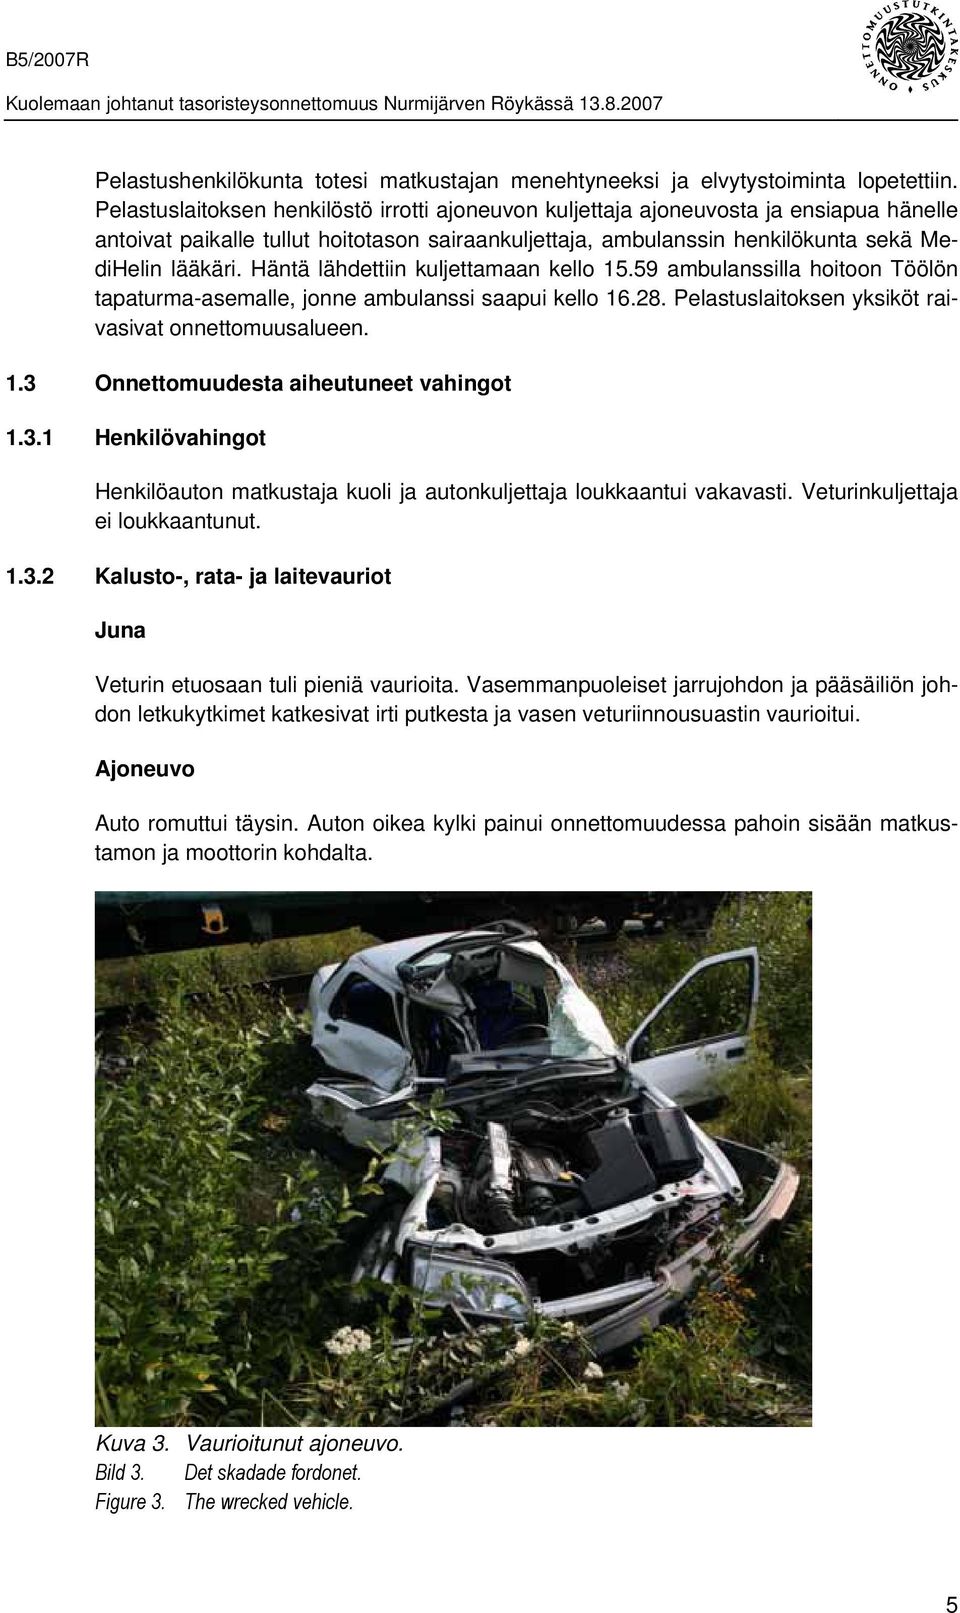 Häntä lähdettiin kuljettamaan kello 15.59 ambulanssilla hoitoon Töölön tapaturma-asemalle, jonne ambulanssi saapui kello 16.28. Pelastuslaitoksen yksiköt raivasivat onnettomuusalueen. 1.3 Onnettomuudesta aiheutuneet vahingot 1.